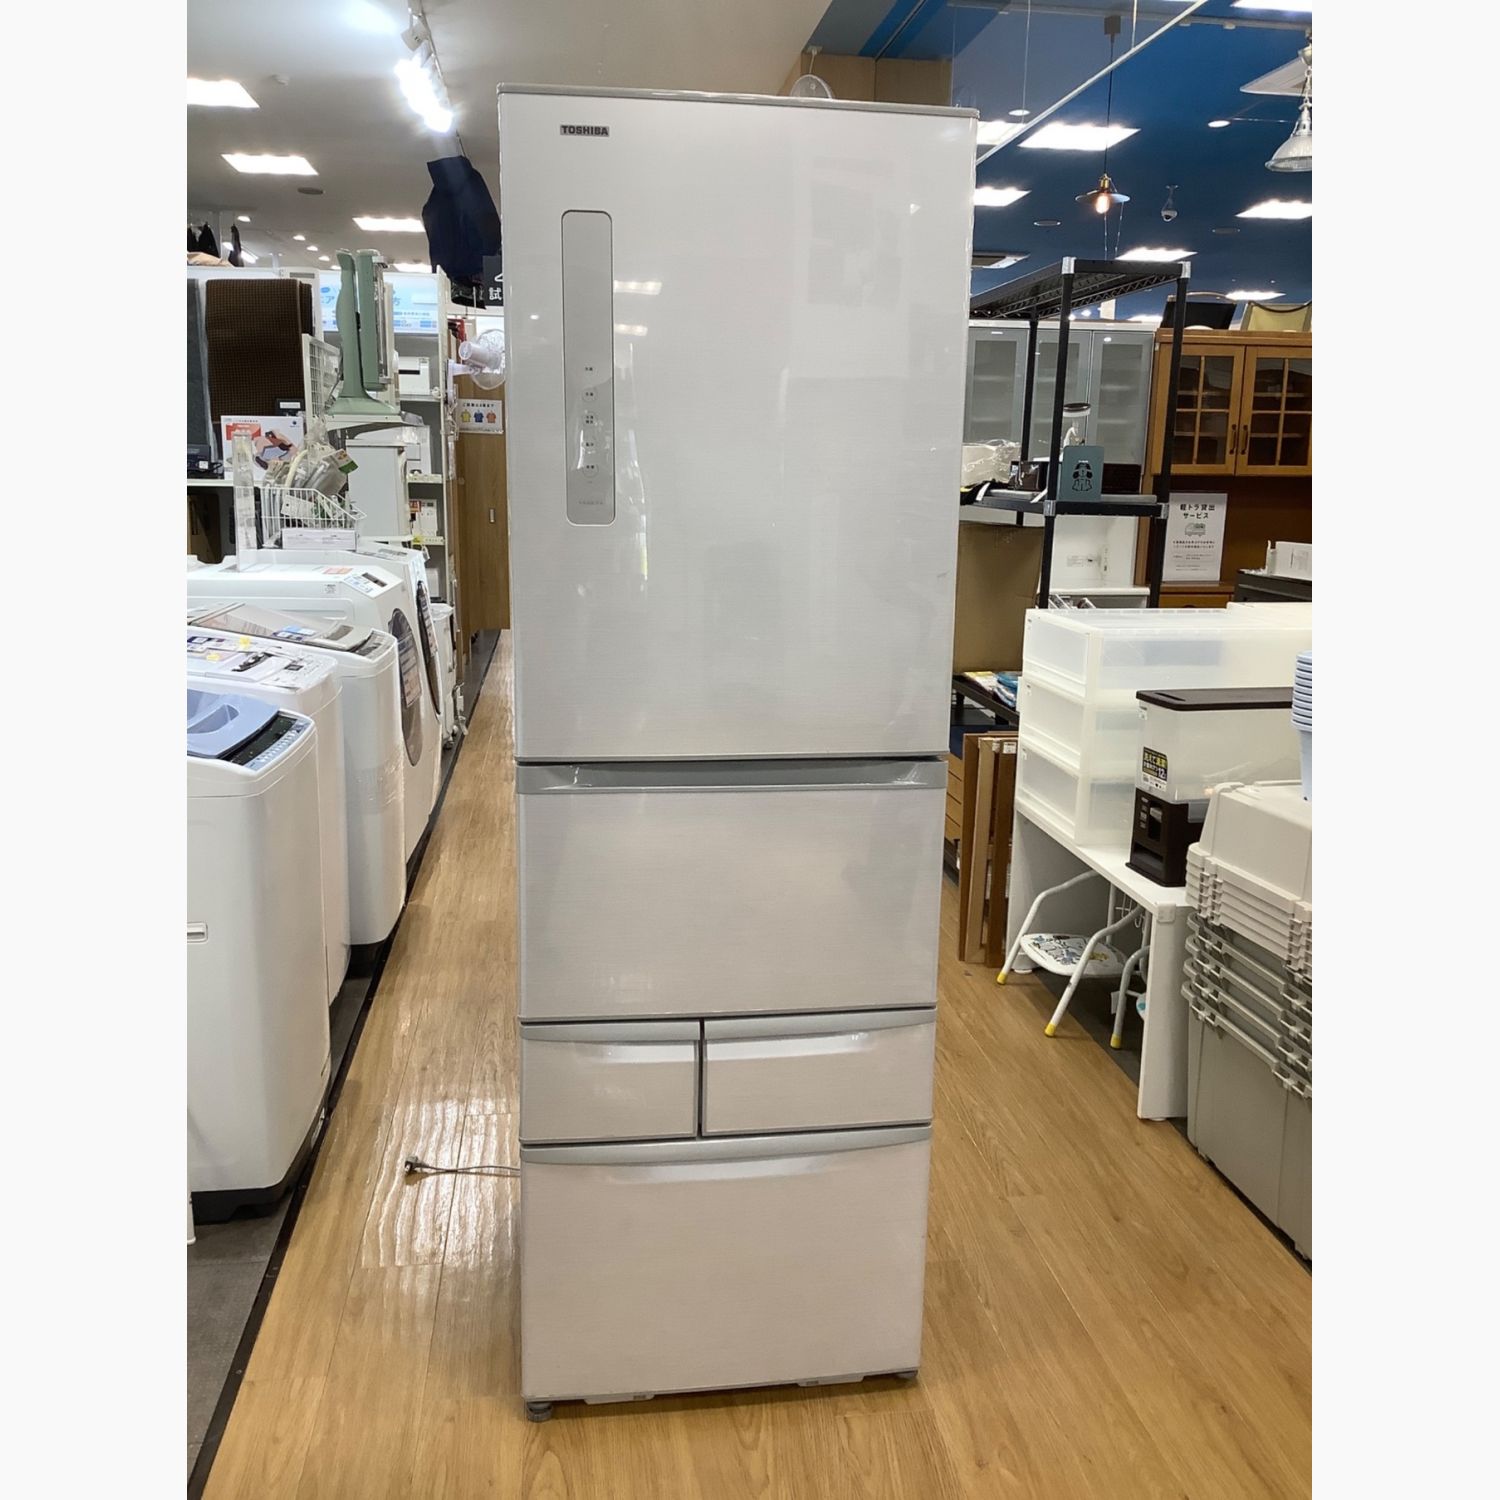 東芝 6ドア冷蔵庫 2014年製 GR-G51FX - キッチン家電